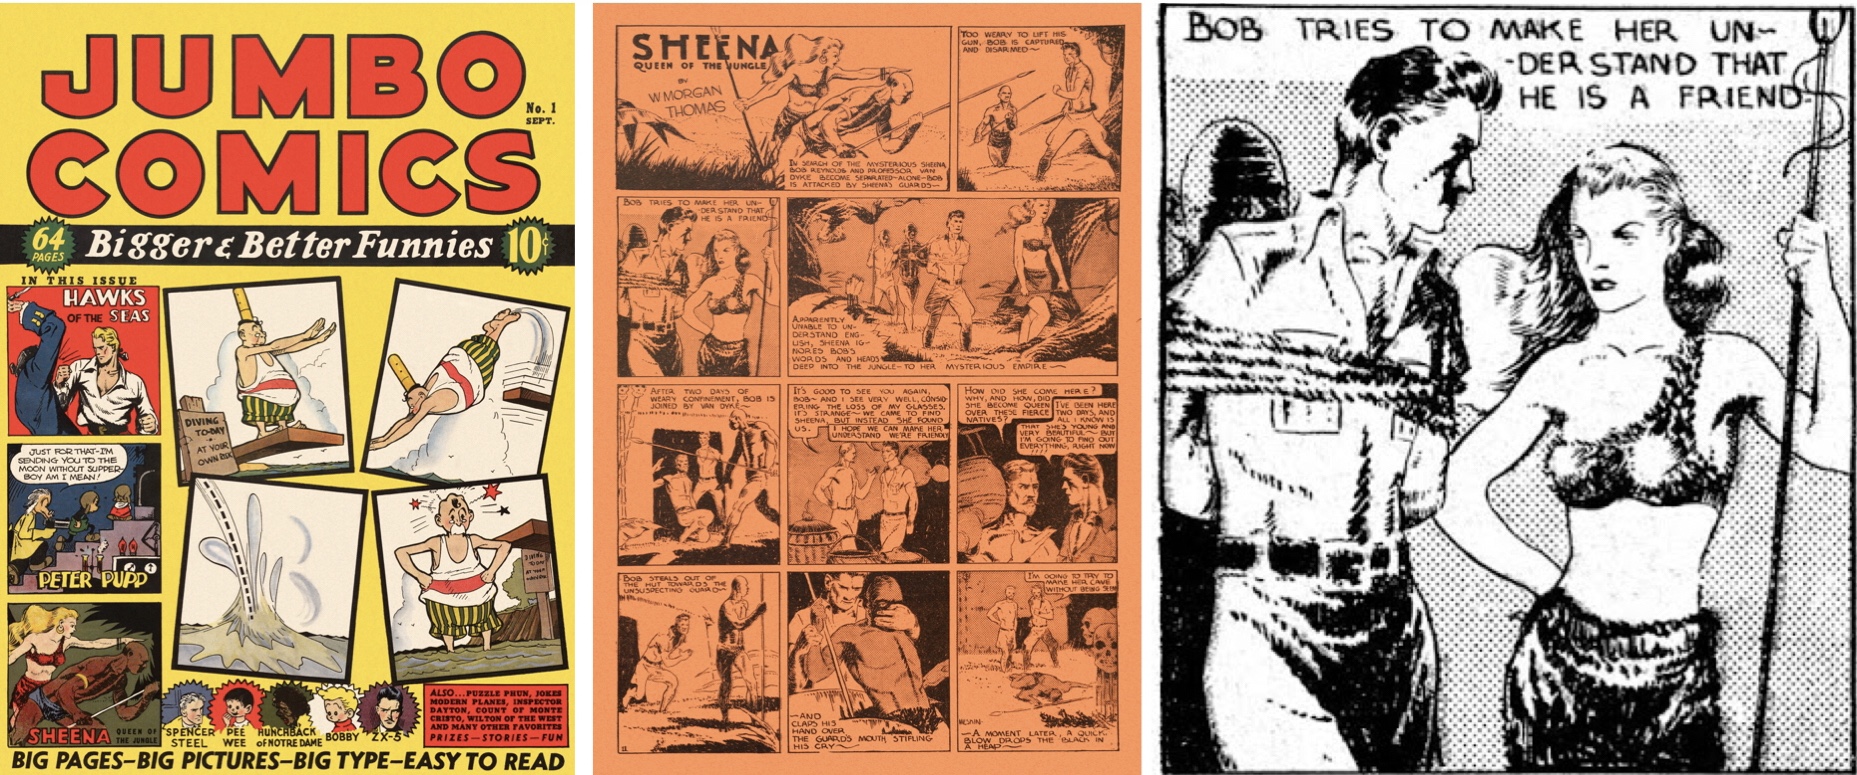 Jumbo Comics #1 publicerade svart/vita serier på färgat papper, men exkluderar man bakgrundsfärgen får man fram bilden på Sheena till höger.